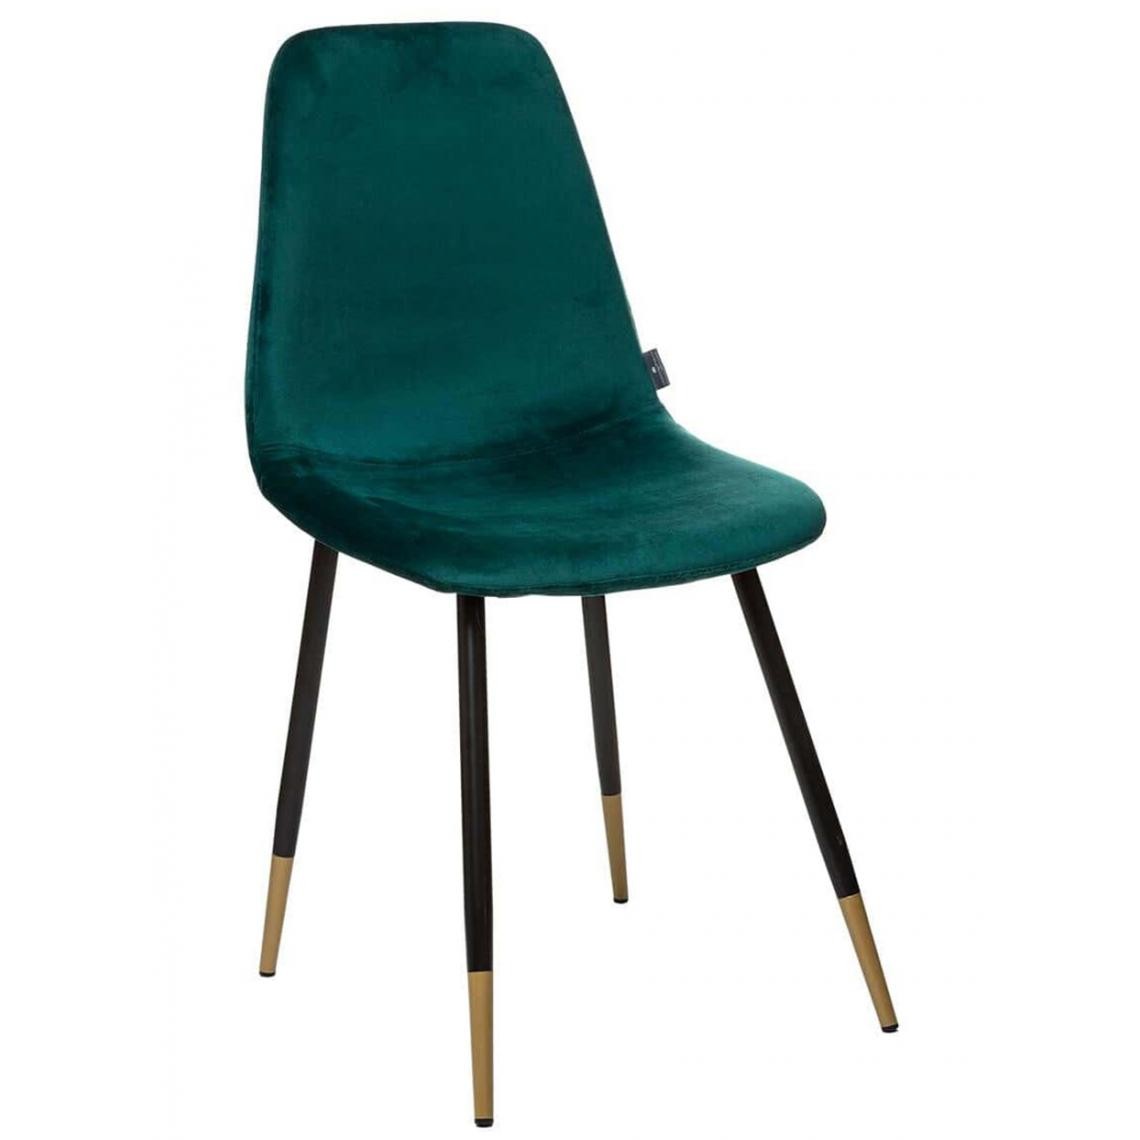 Pegane - Lot de 4 chaises en velours vert - Longueur 44 x Profondeur 51 x Hauteur 85,5 cm - Chaises